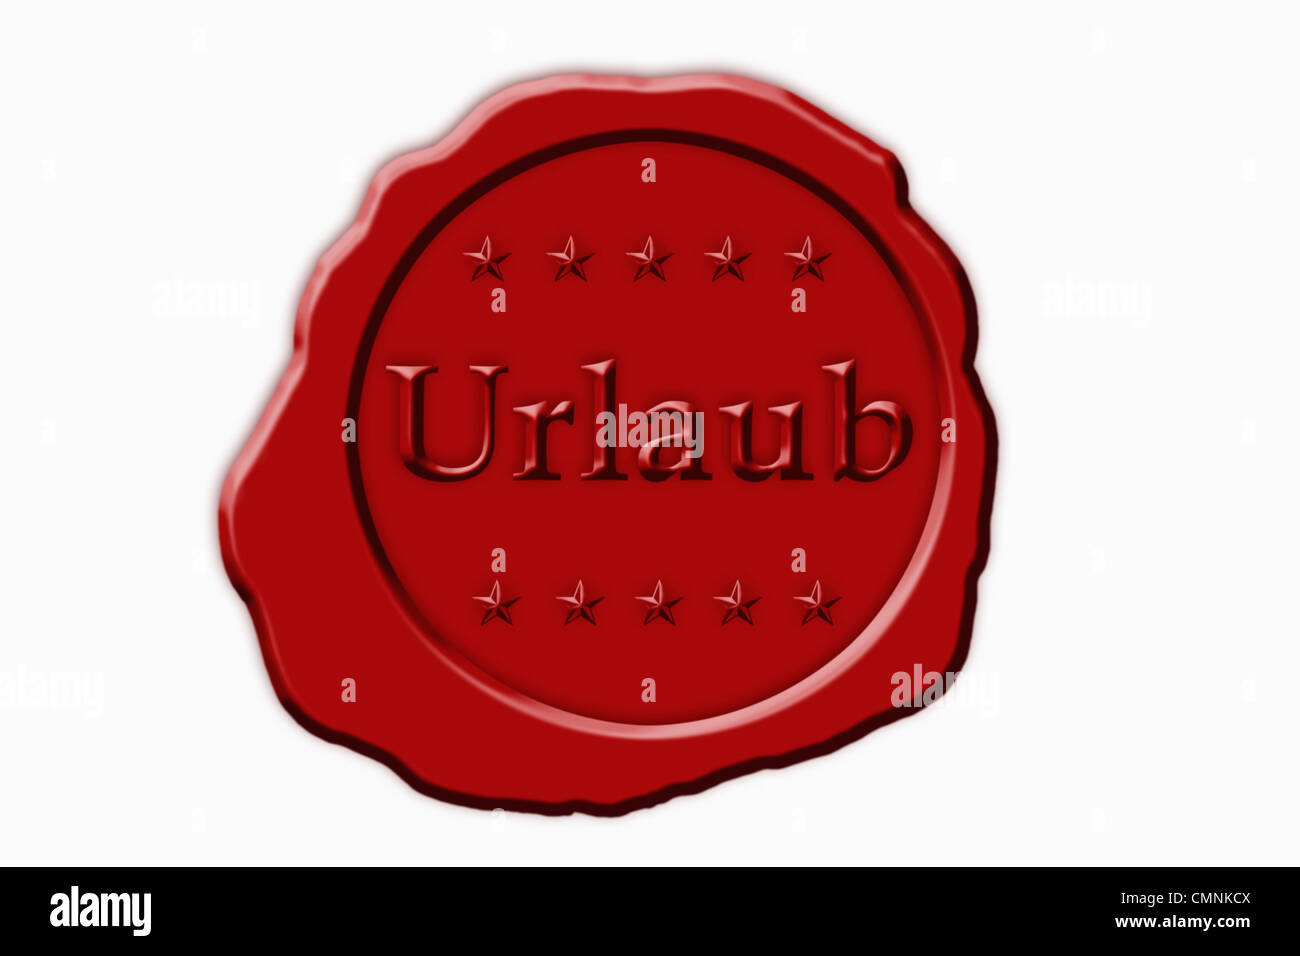 Detailansicht eines roten Siegels mit der Aufschrift Urlaub | Dettaglio foto di un sigillo rosso con la scritta in tedesco holiday Foto Stock